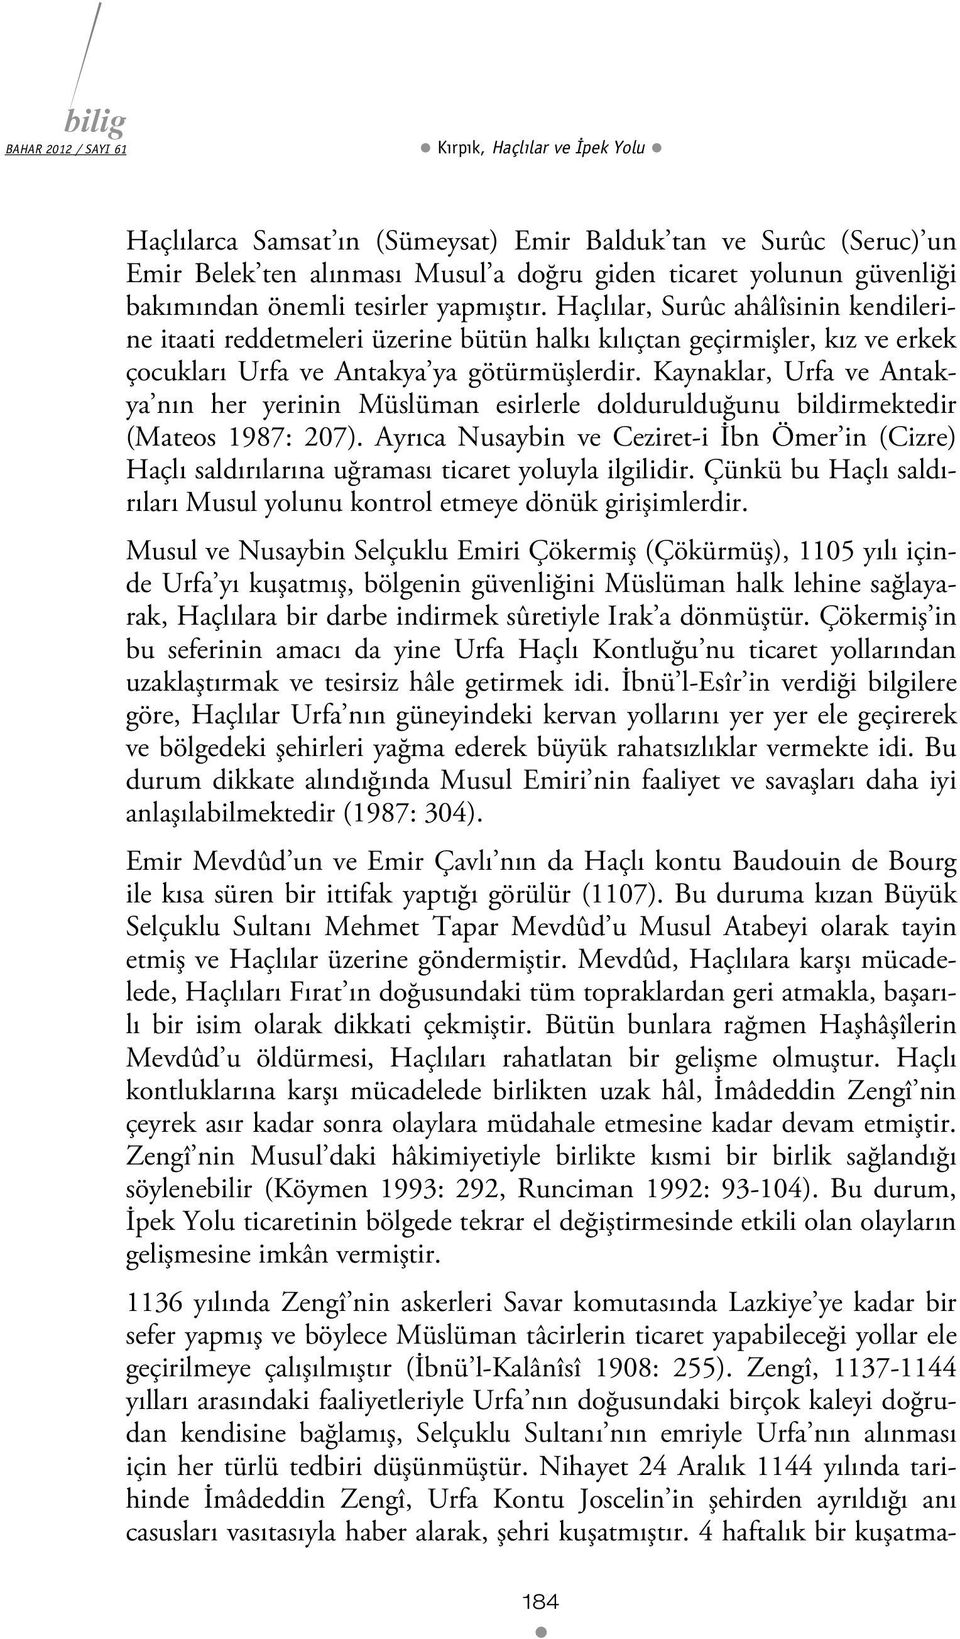 Kaynaklar, Urfa ve Antakya nın her yerinin Müslüman esirlerle doldurulduğunu bildirmektedir (Mateos 1987: 207).